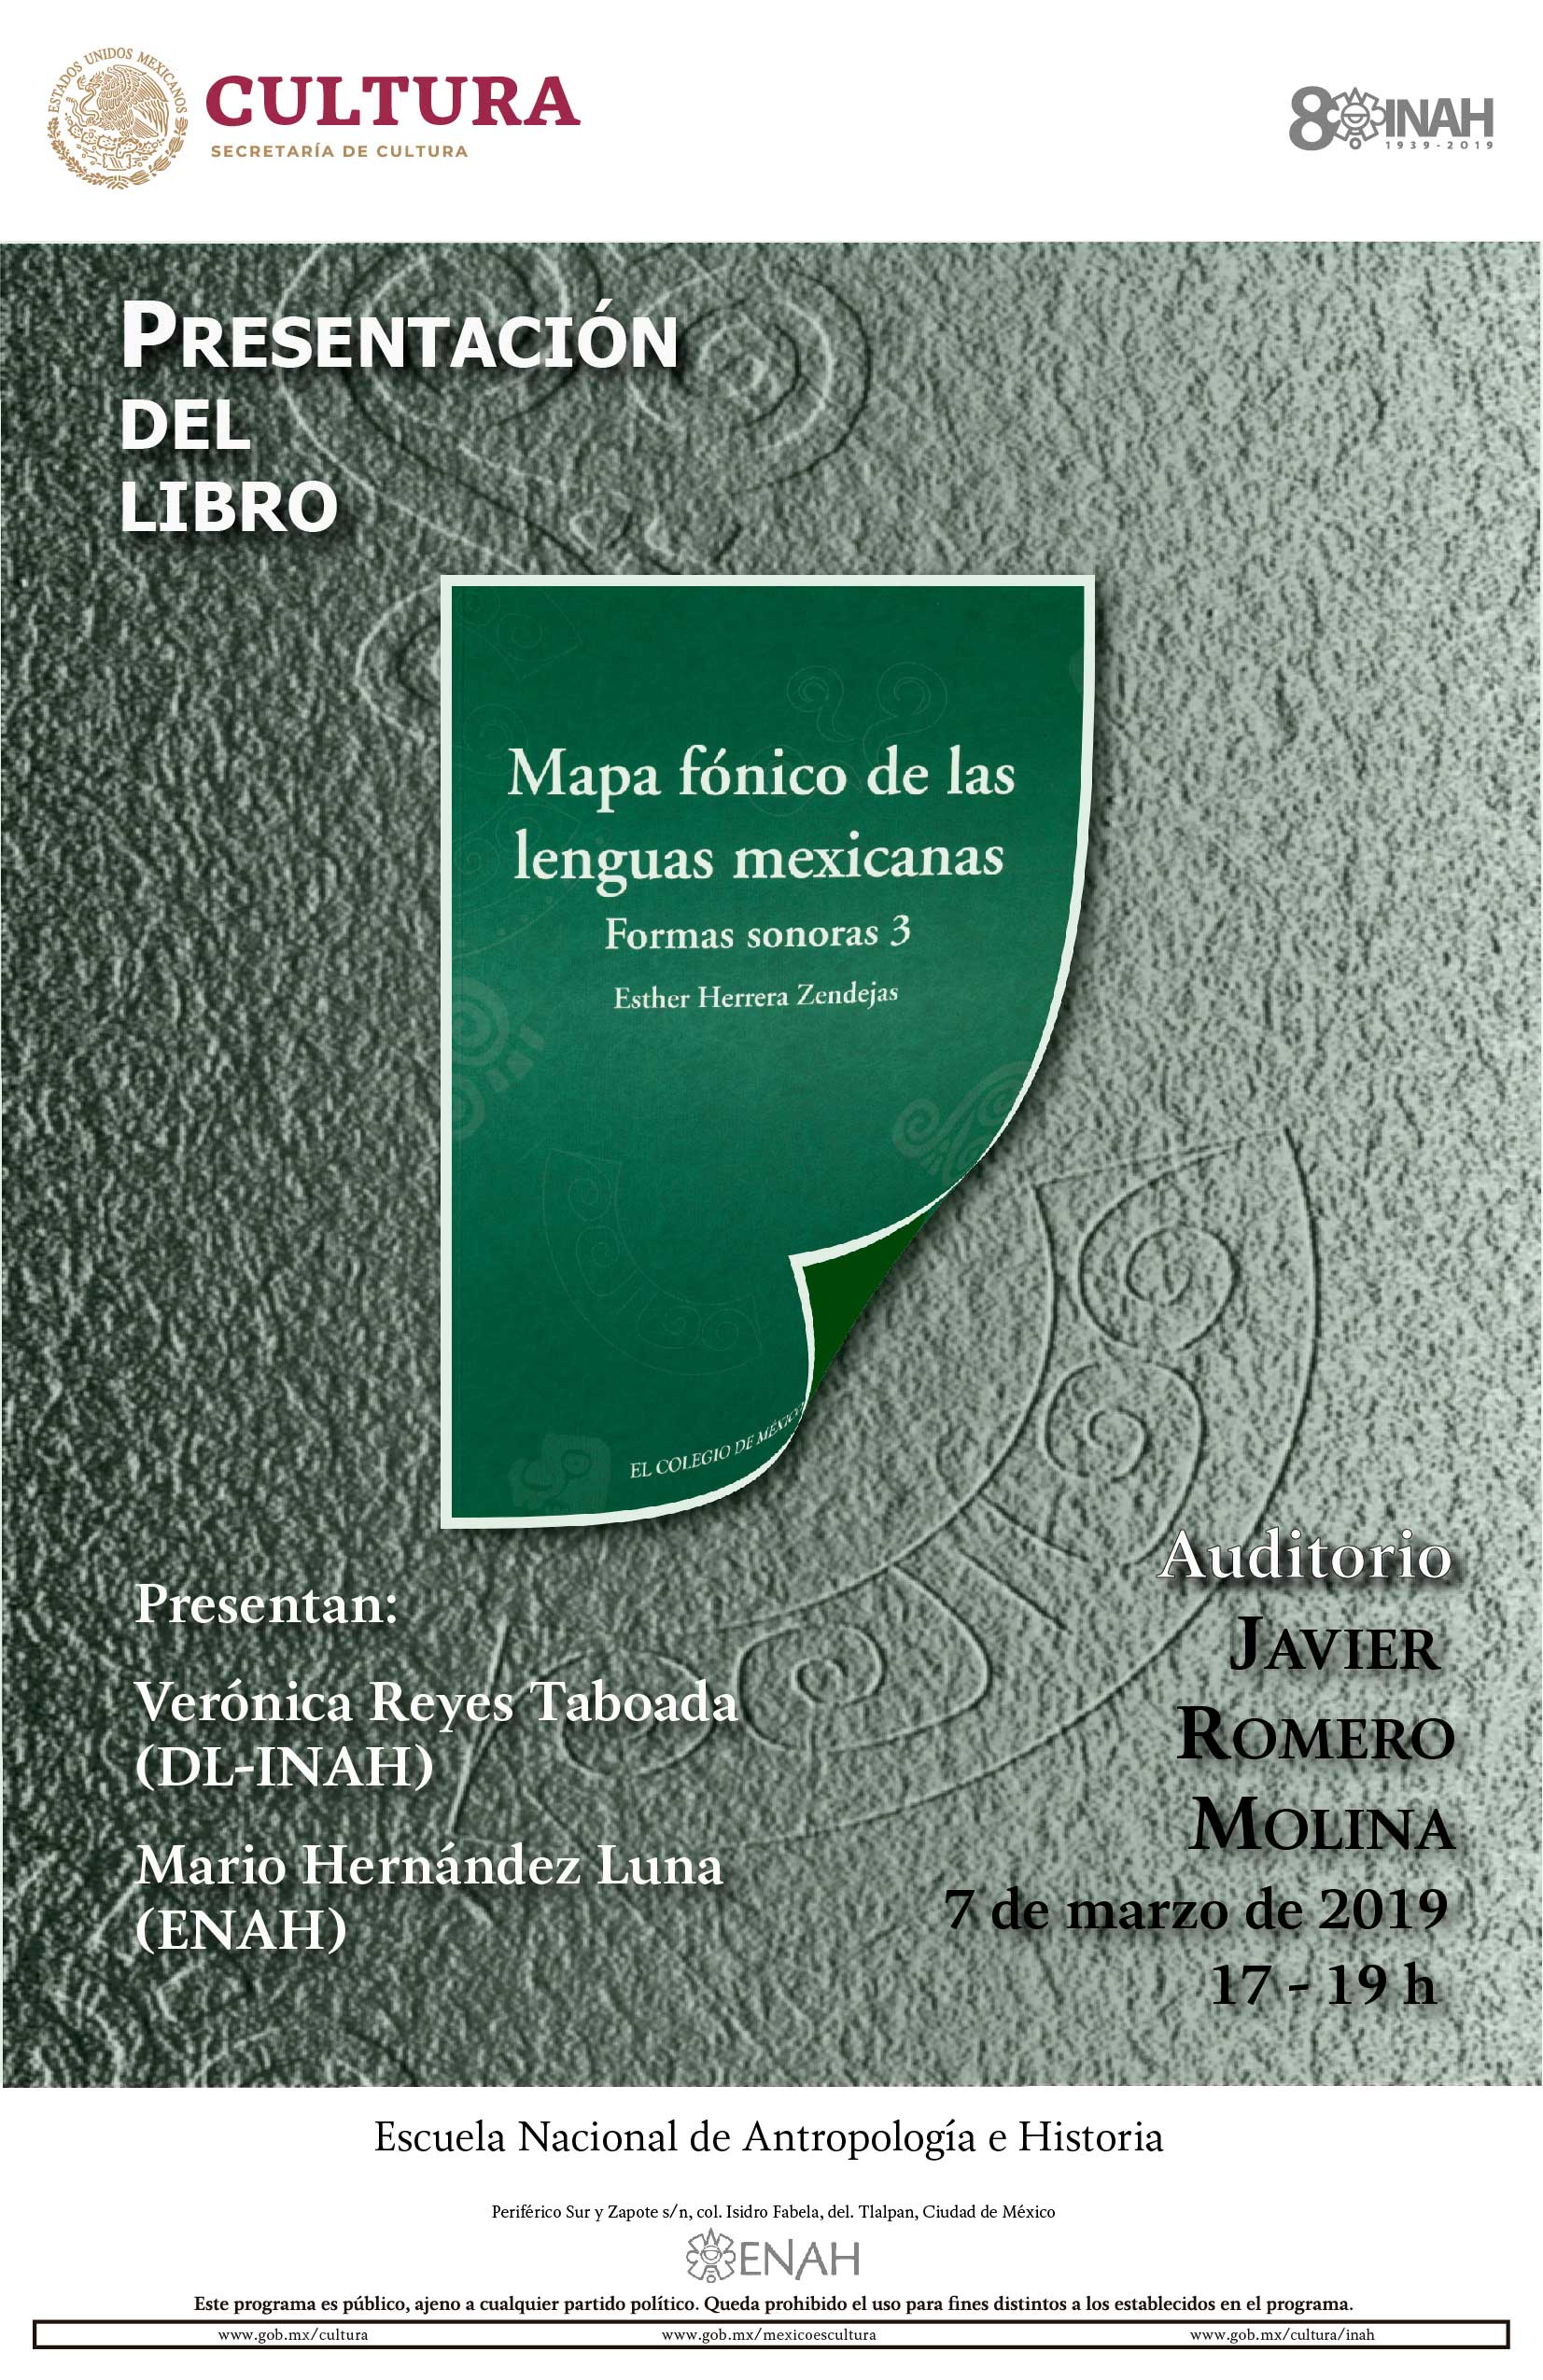 Presentación de Libro: Mapa fónico de las lenguas mexicanas: formas sonoras 3